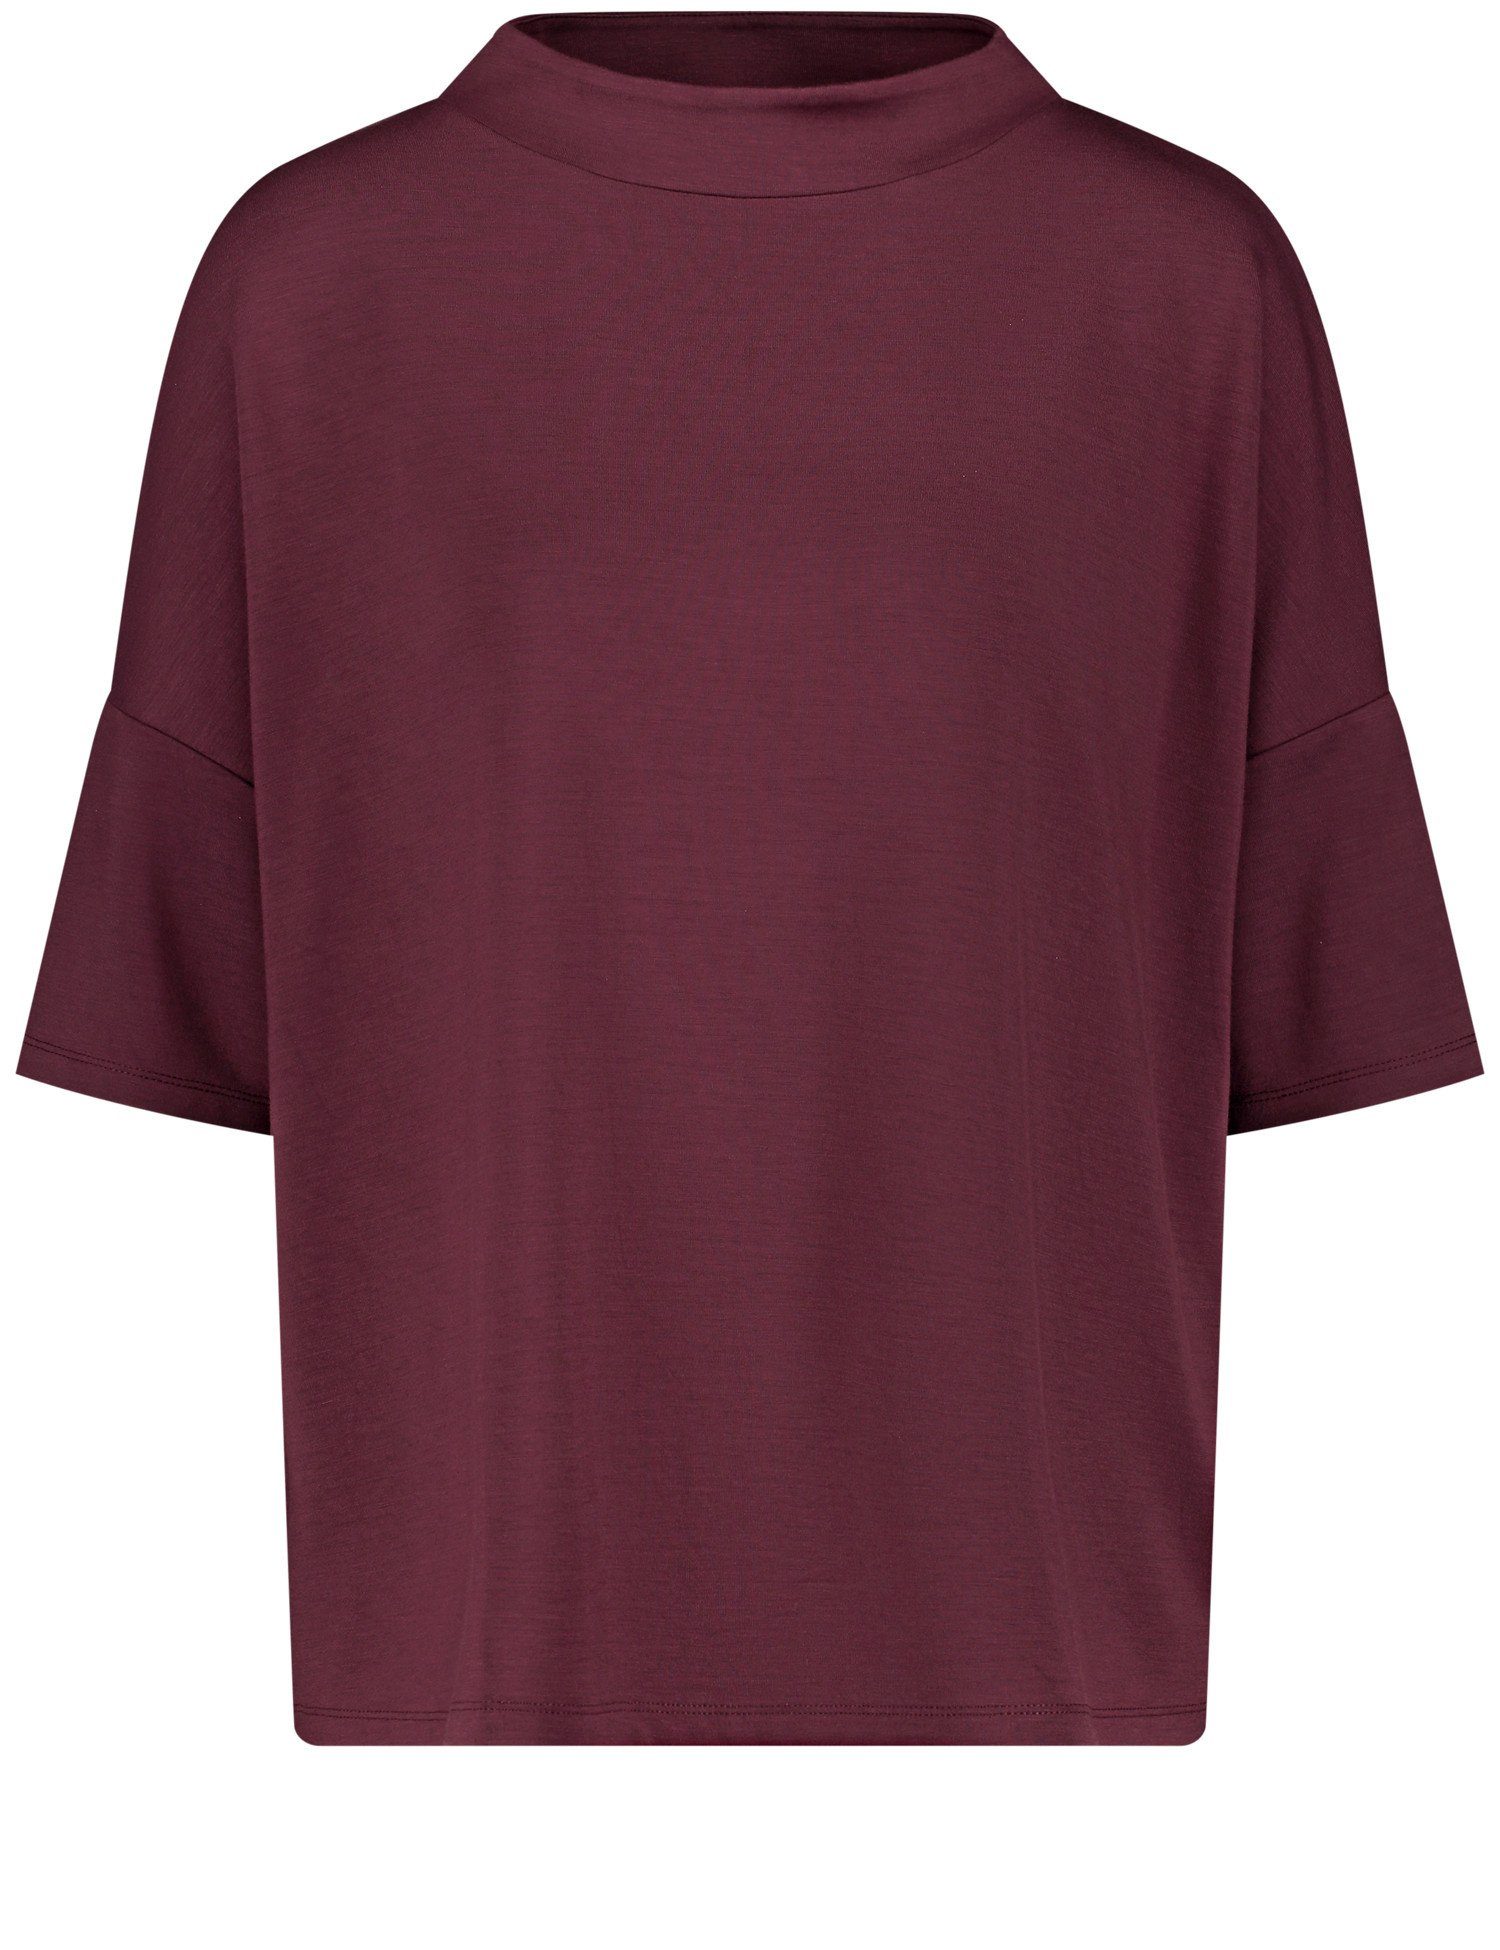 Burgundy Halbarmshirt GERRY 3/4-Arm-Shirt WEBER